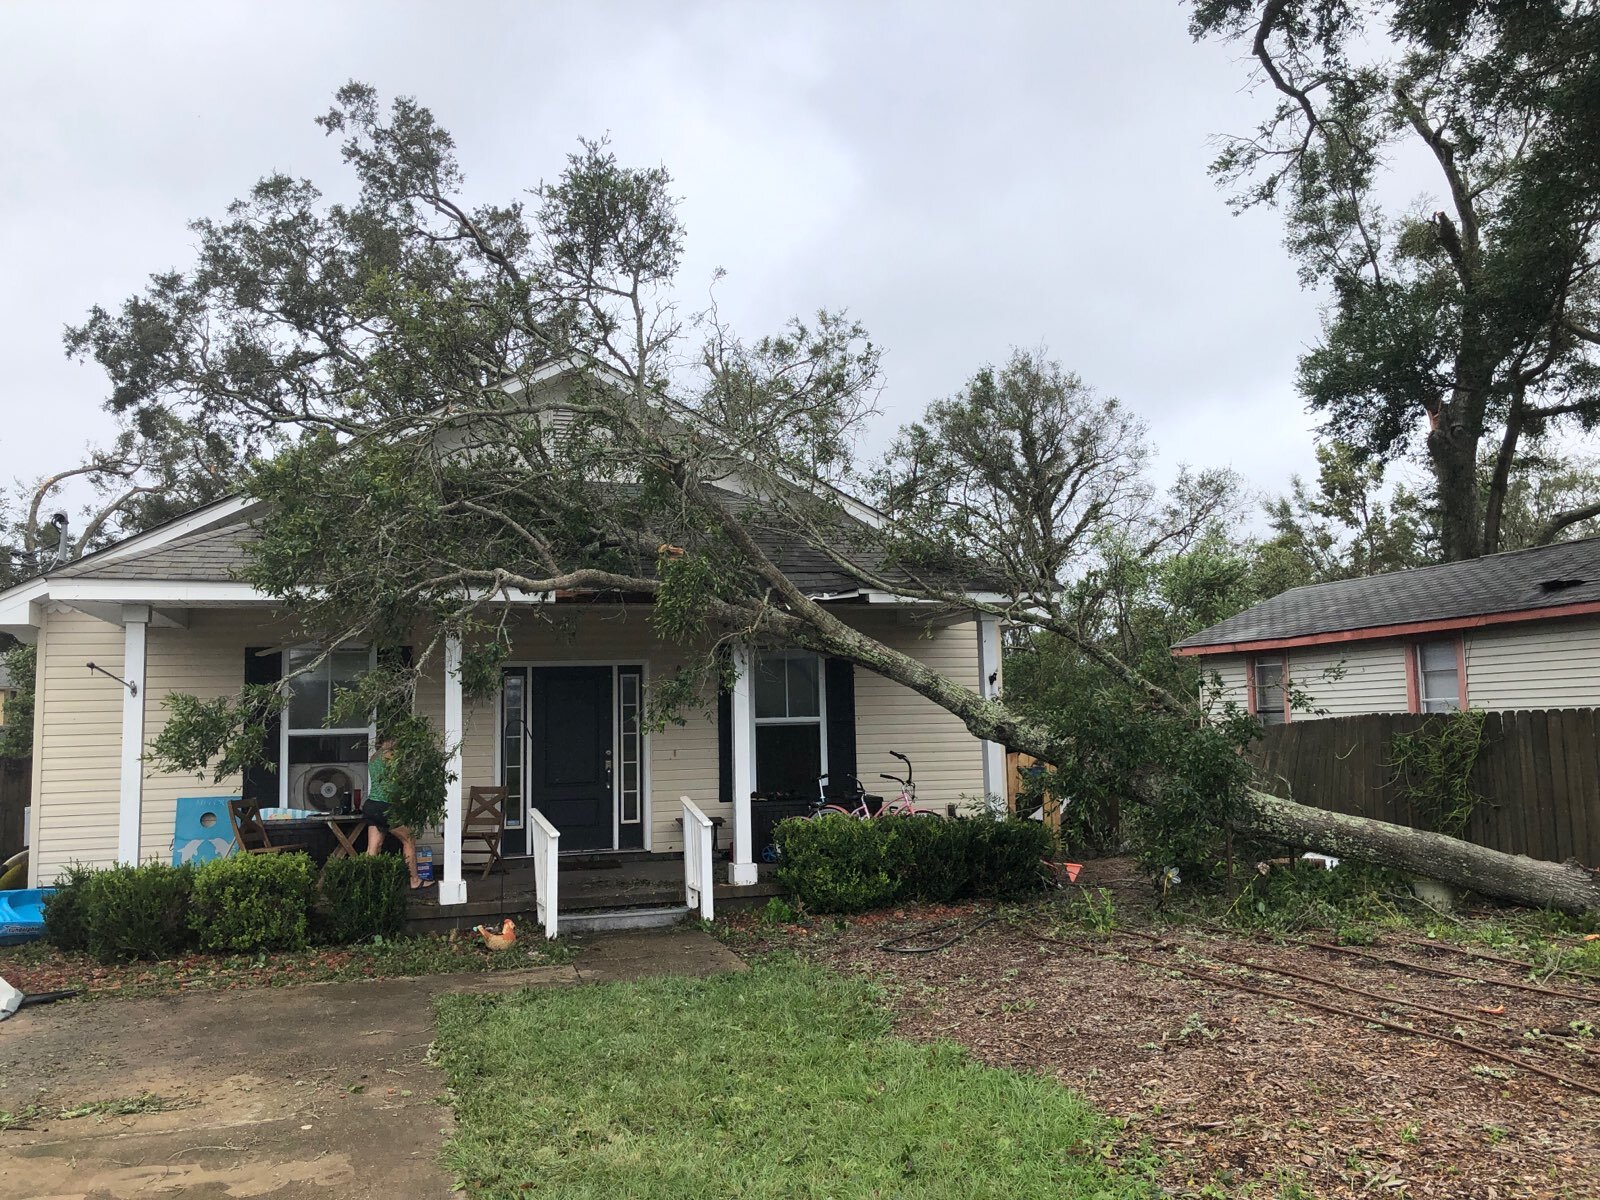 Hurricane damage in Pensacola